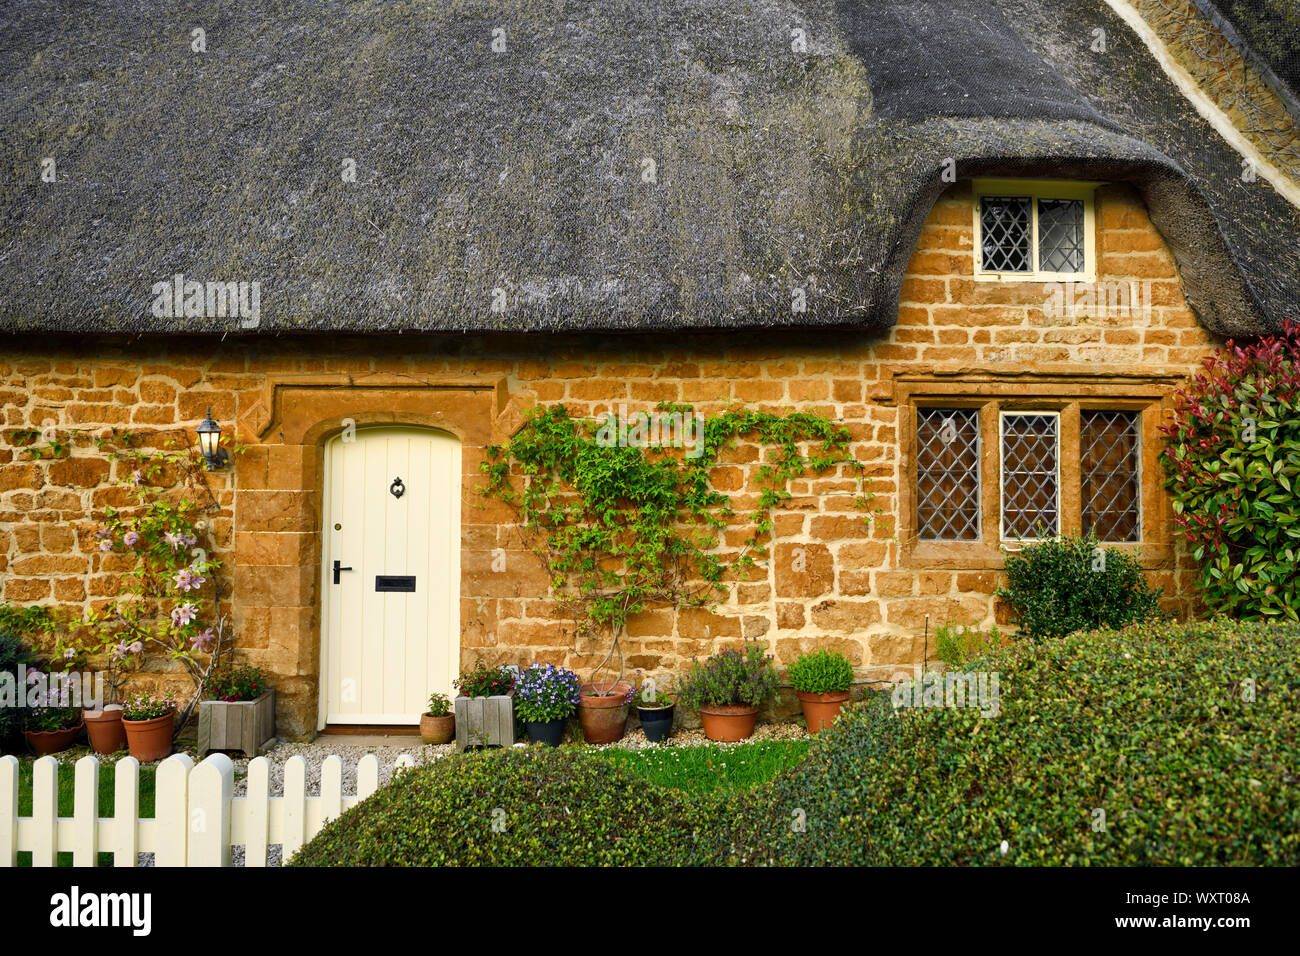 Historische reetgedeckte Ferienhaus in großen Tew Dorf mit geformten Hecken am Tor und Topfpflanzen an gelben Cotswold stone wall Oxfordshire Englan Stockfoto